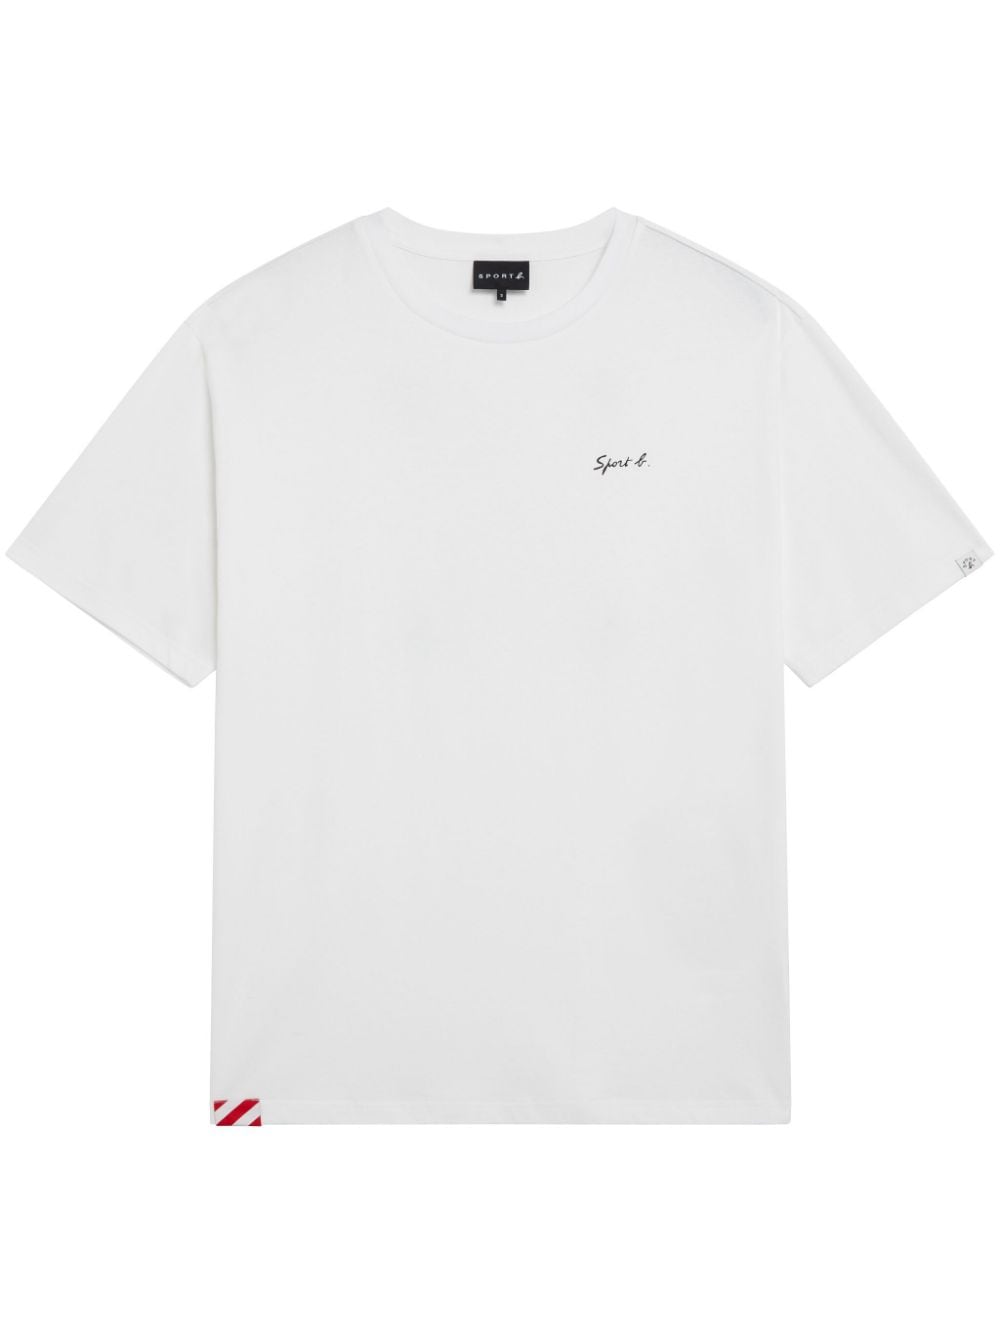 SPORT b. by agnès b. T-Shirt mit Notiz-Print - Weiß von SPORT b. by agnès b.